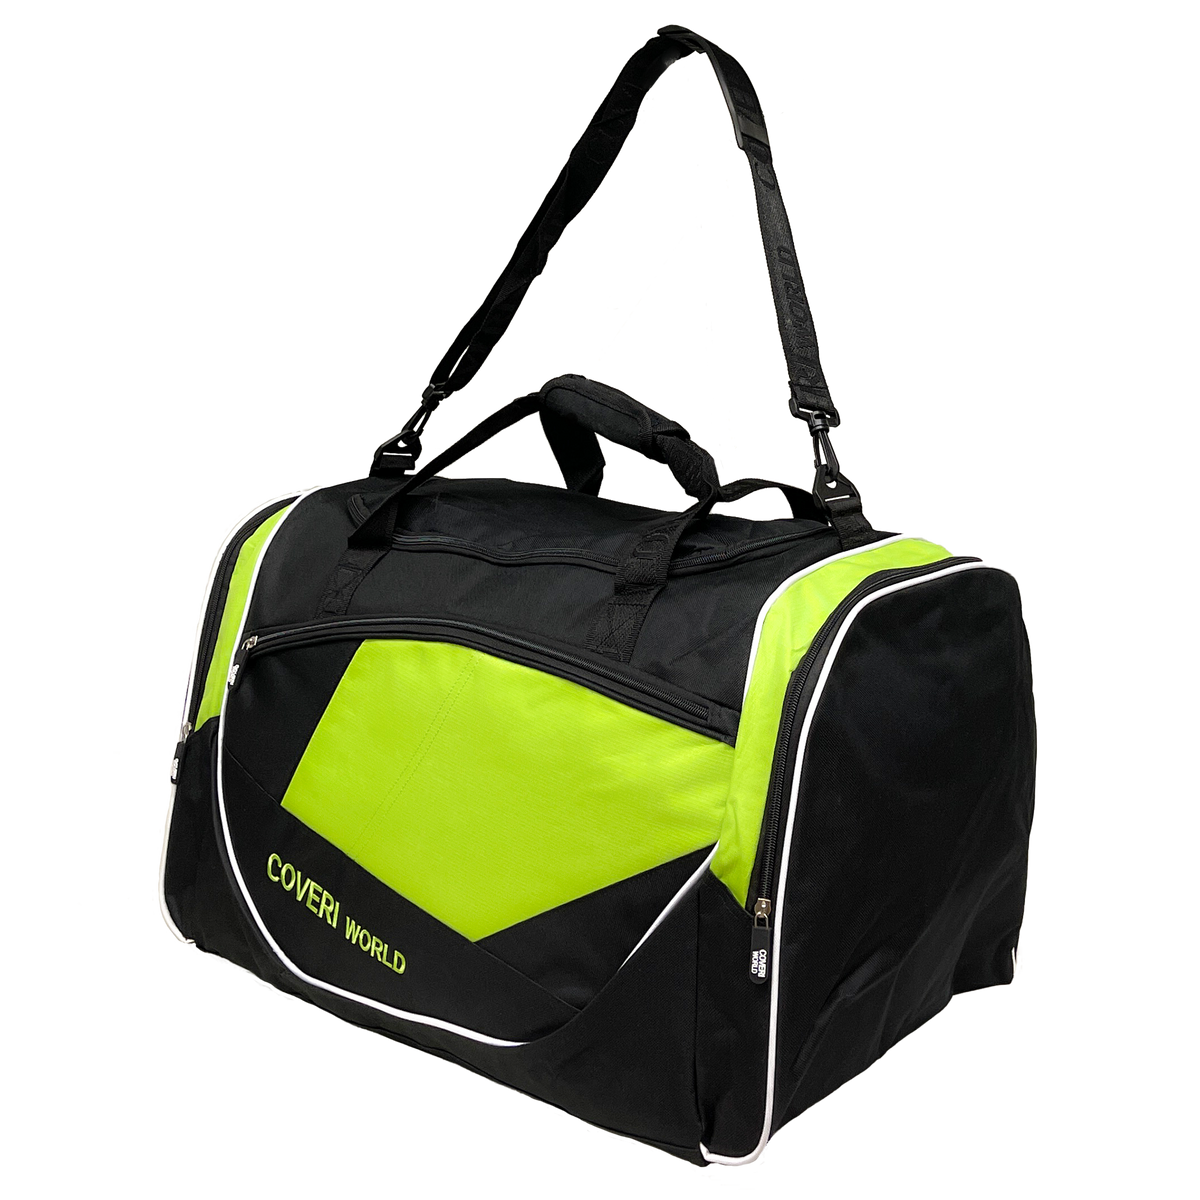 Coveri World - Multifunkčná športová taška: Ideálna pre šport a cestovanie